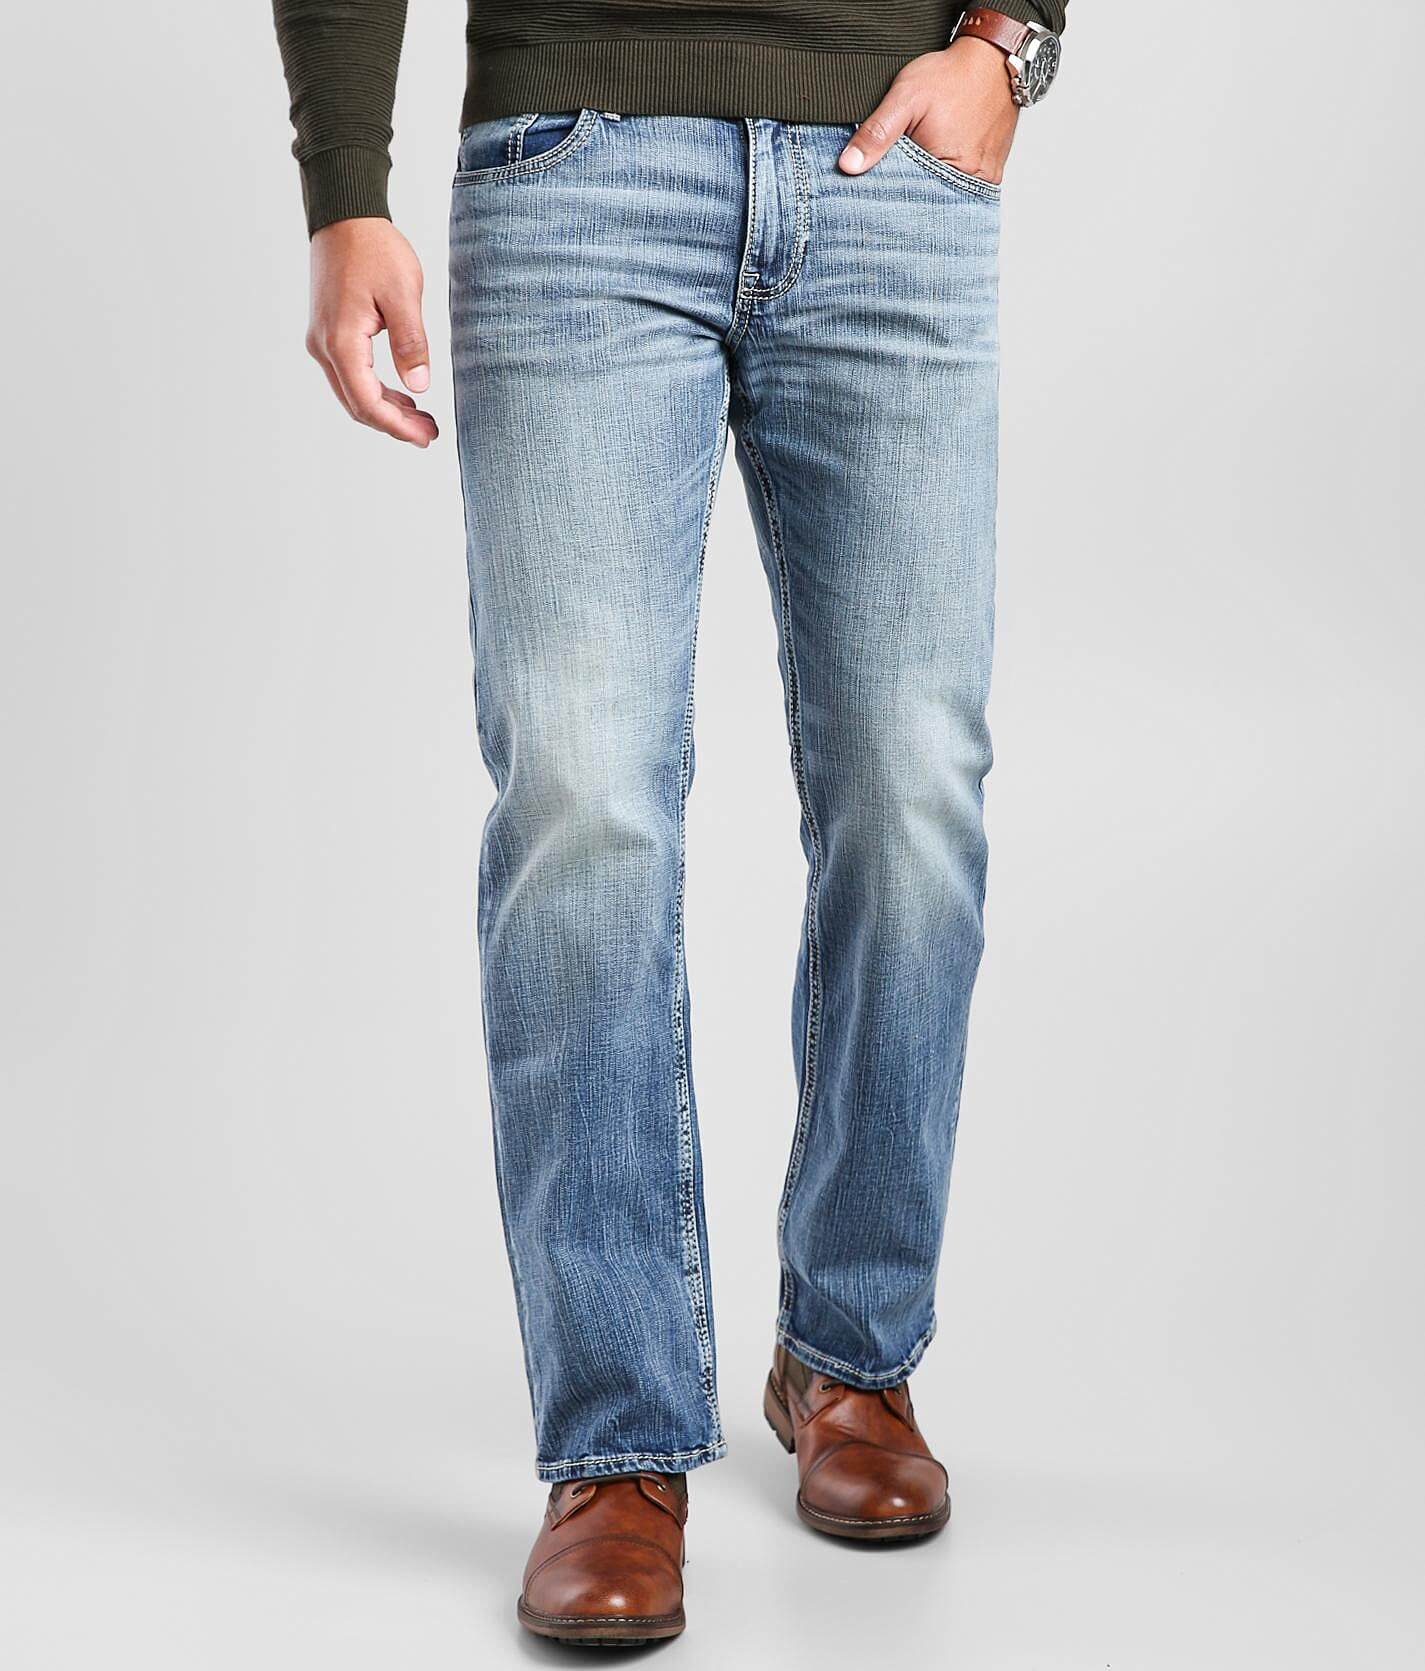 ebay bke men's jeans